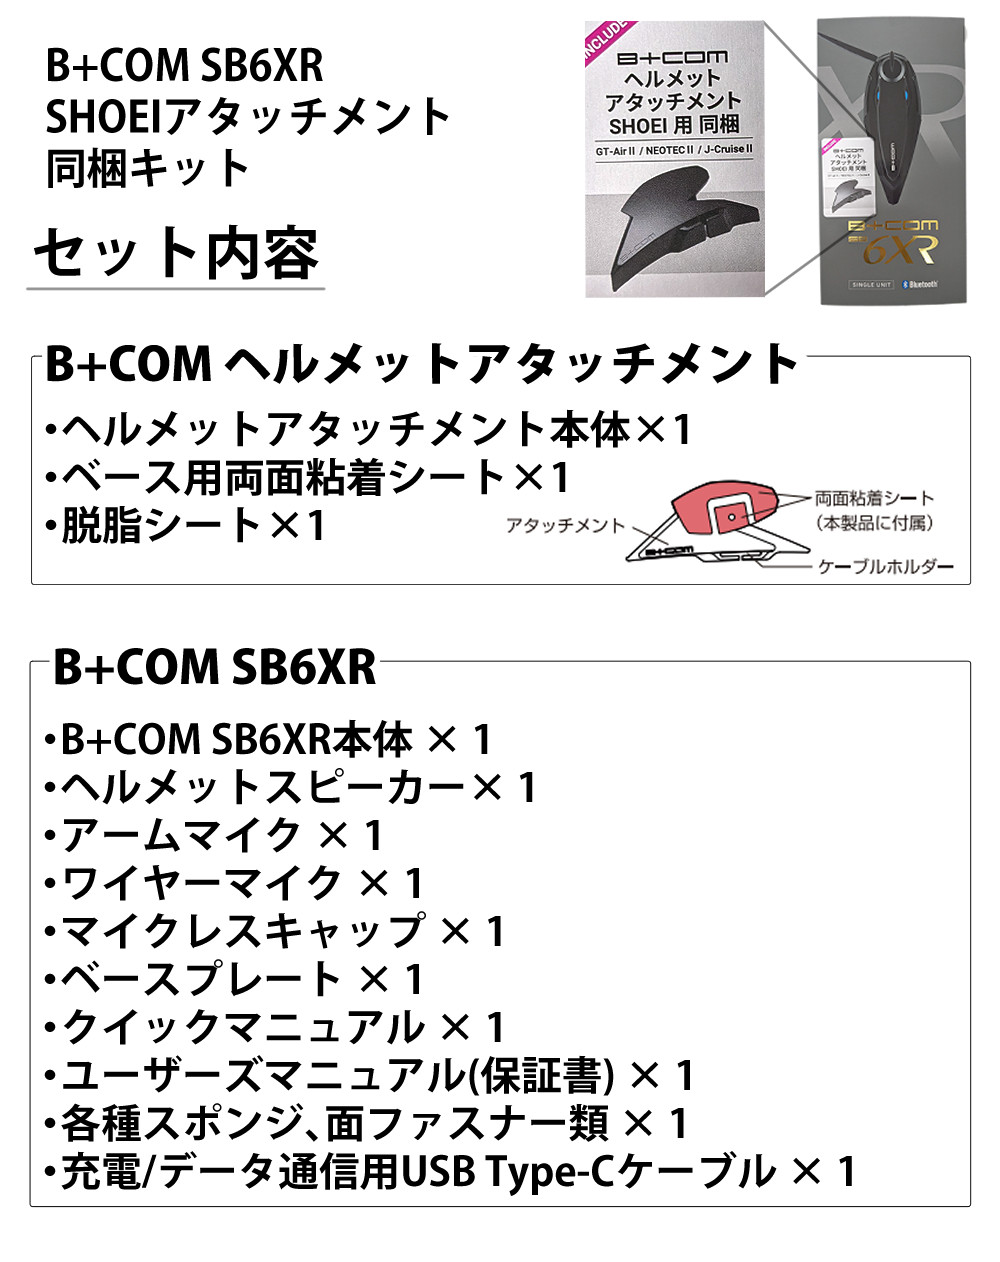 サインハウス ビーコム SB6XR シングルユニット SHOEI アタッチメント 